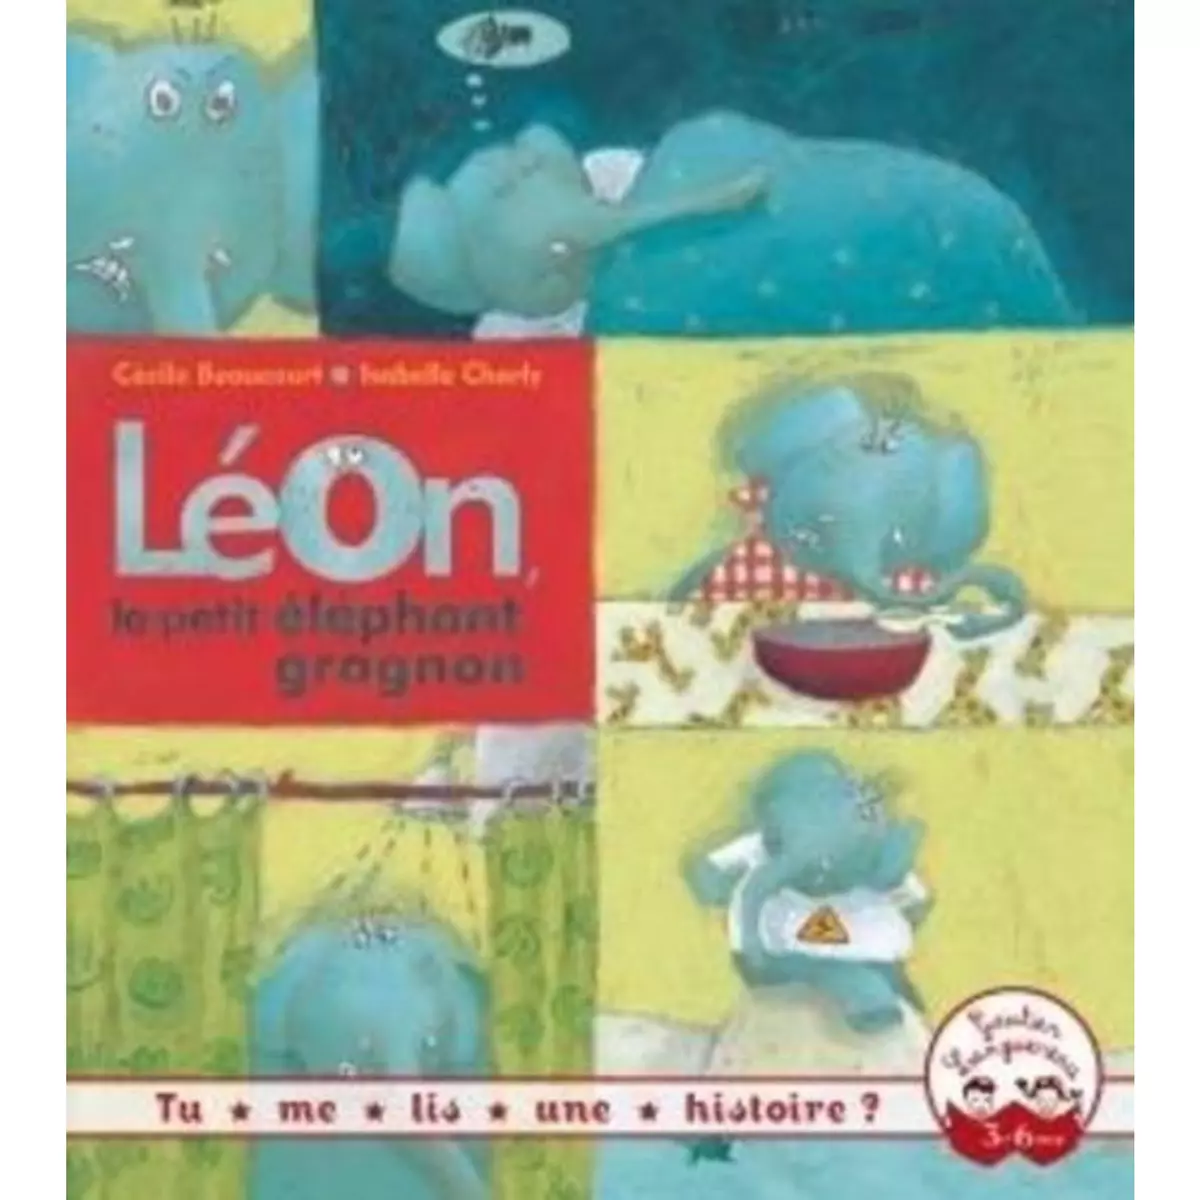  LEON, LE PETIT ELEPHANT GROGNON, Beaucourt Cécile